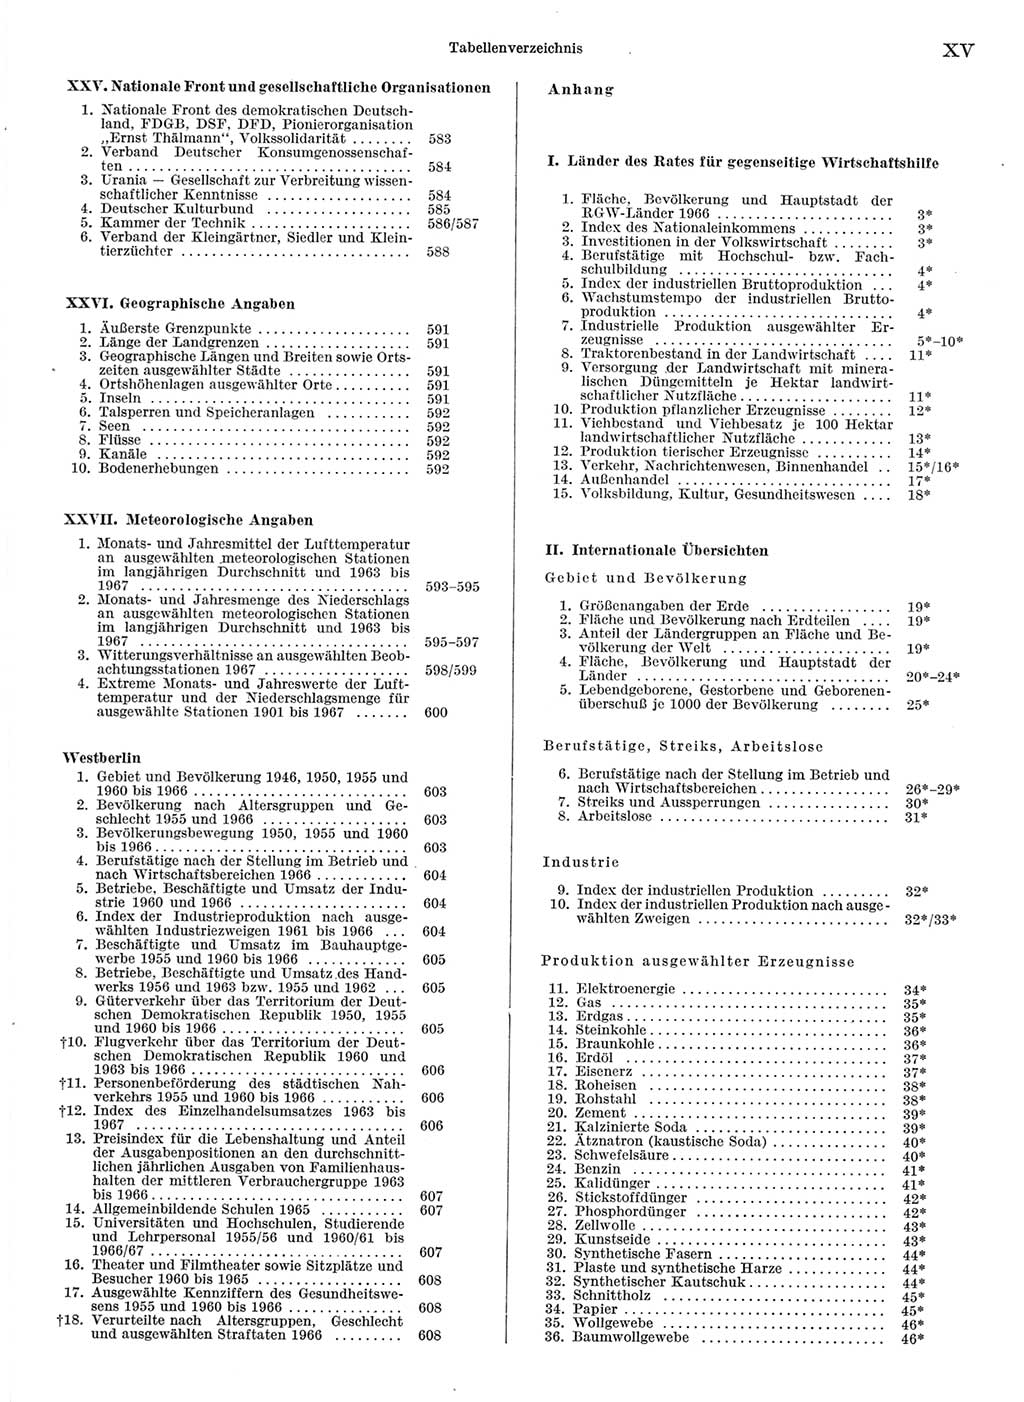 Statistisches Jahrbuch der Deutschen Demokratischen Republik (DDR) 1968, Seite 15 (Stat. Jb. DDR 1968, S. 15)